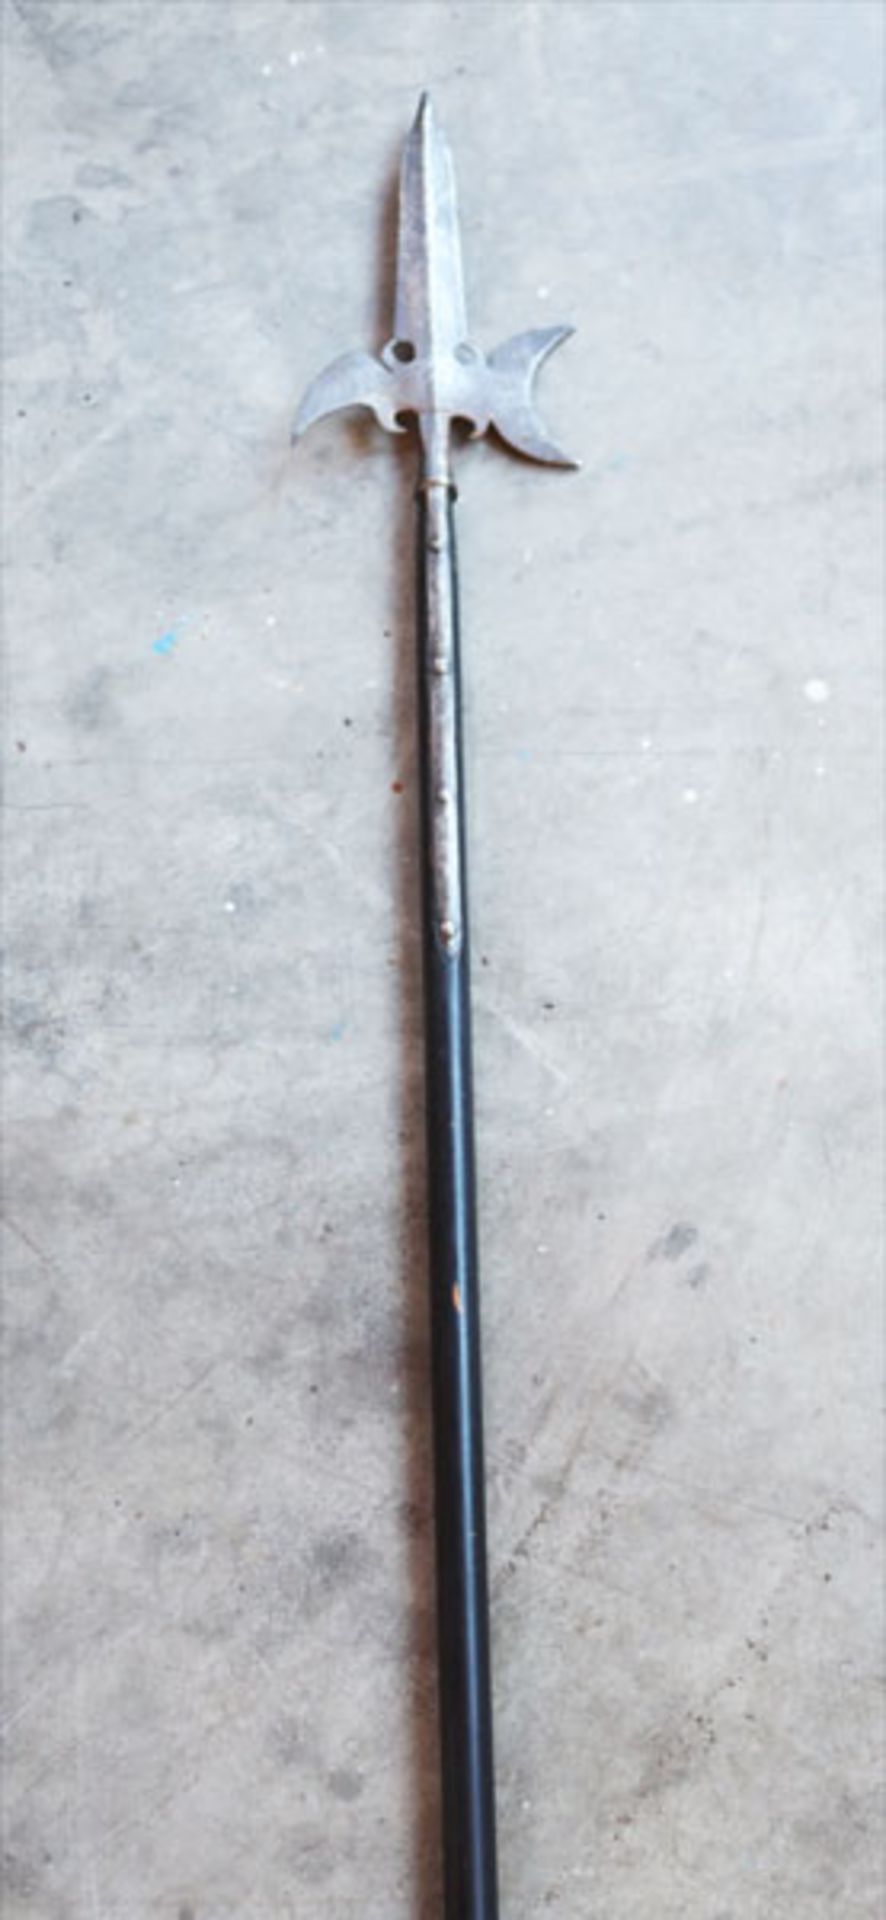 Halibarde, Altersspuren, L 230 cm, kein Versand, Abholung oder Versand per Spedition